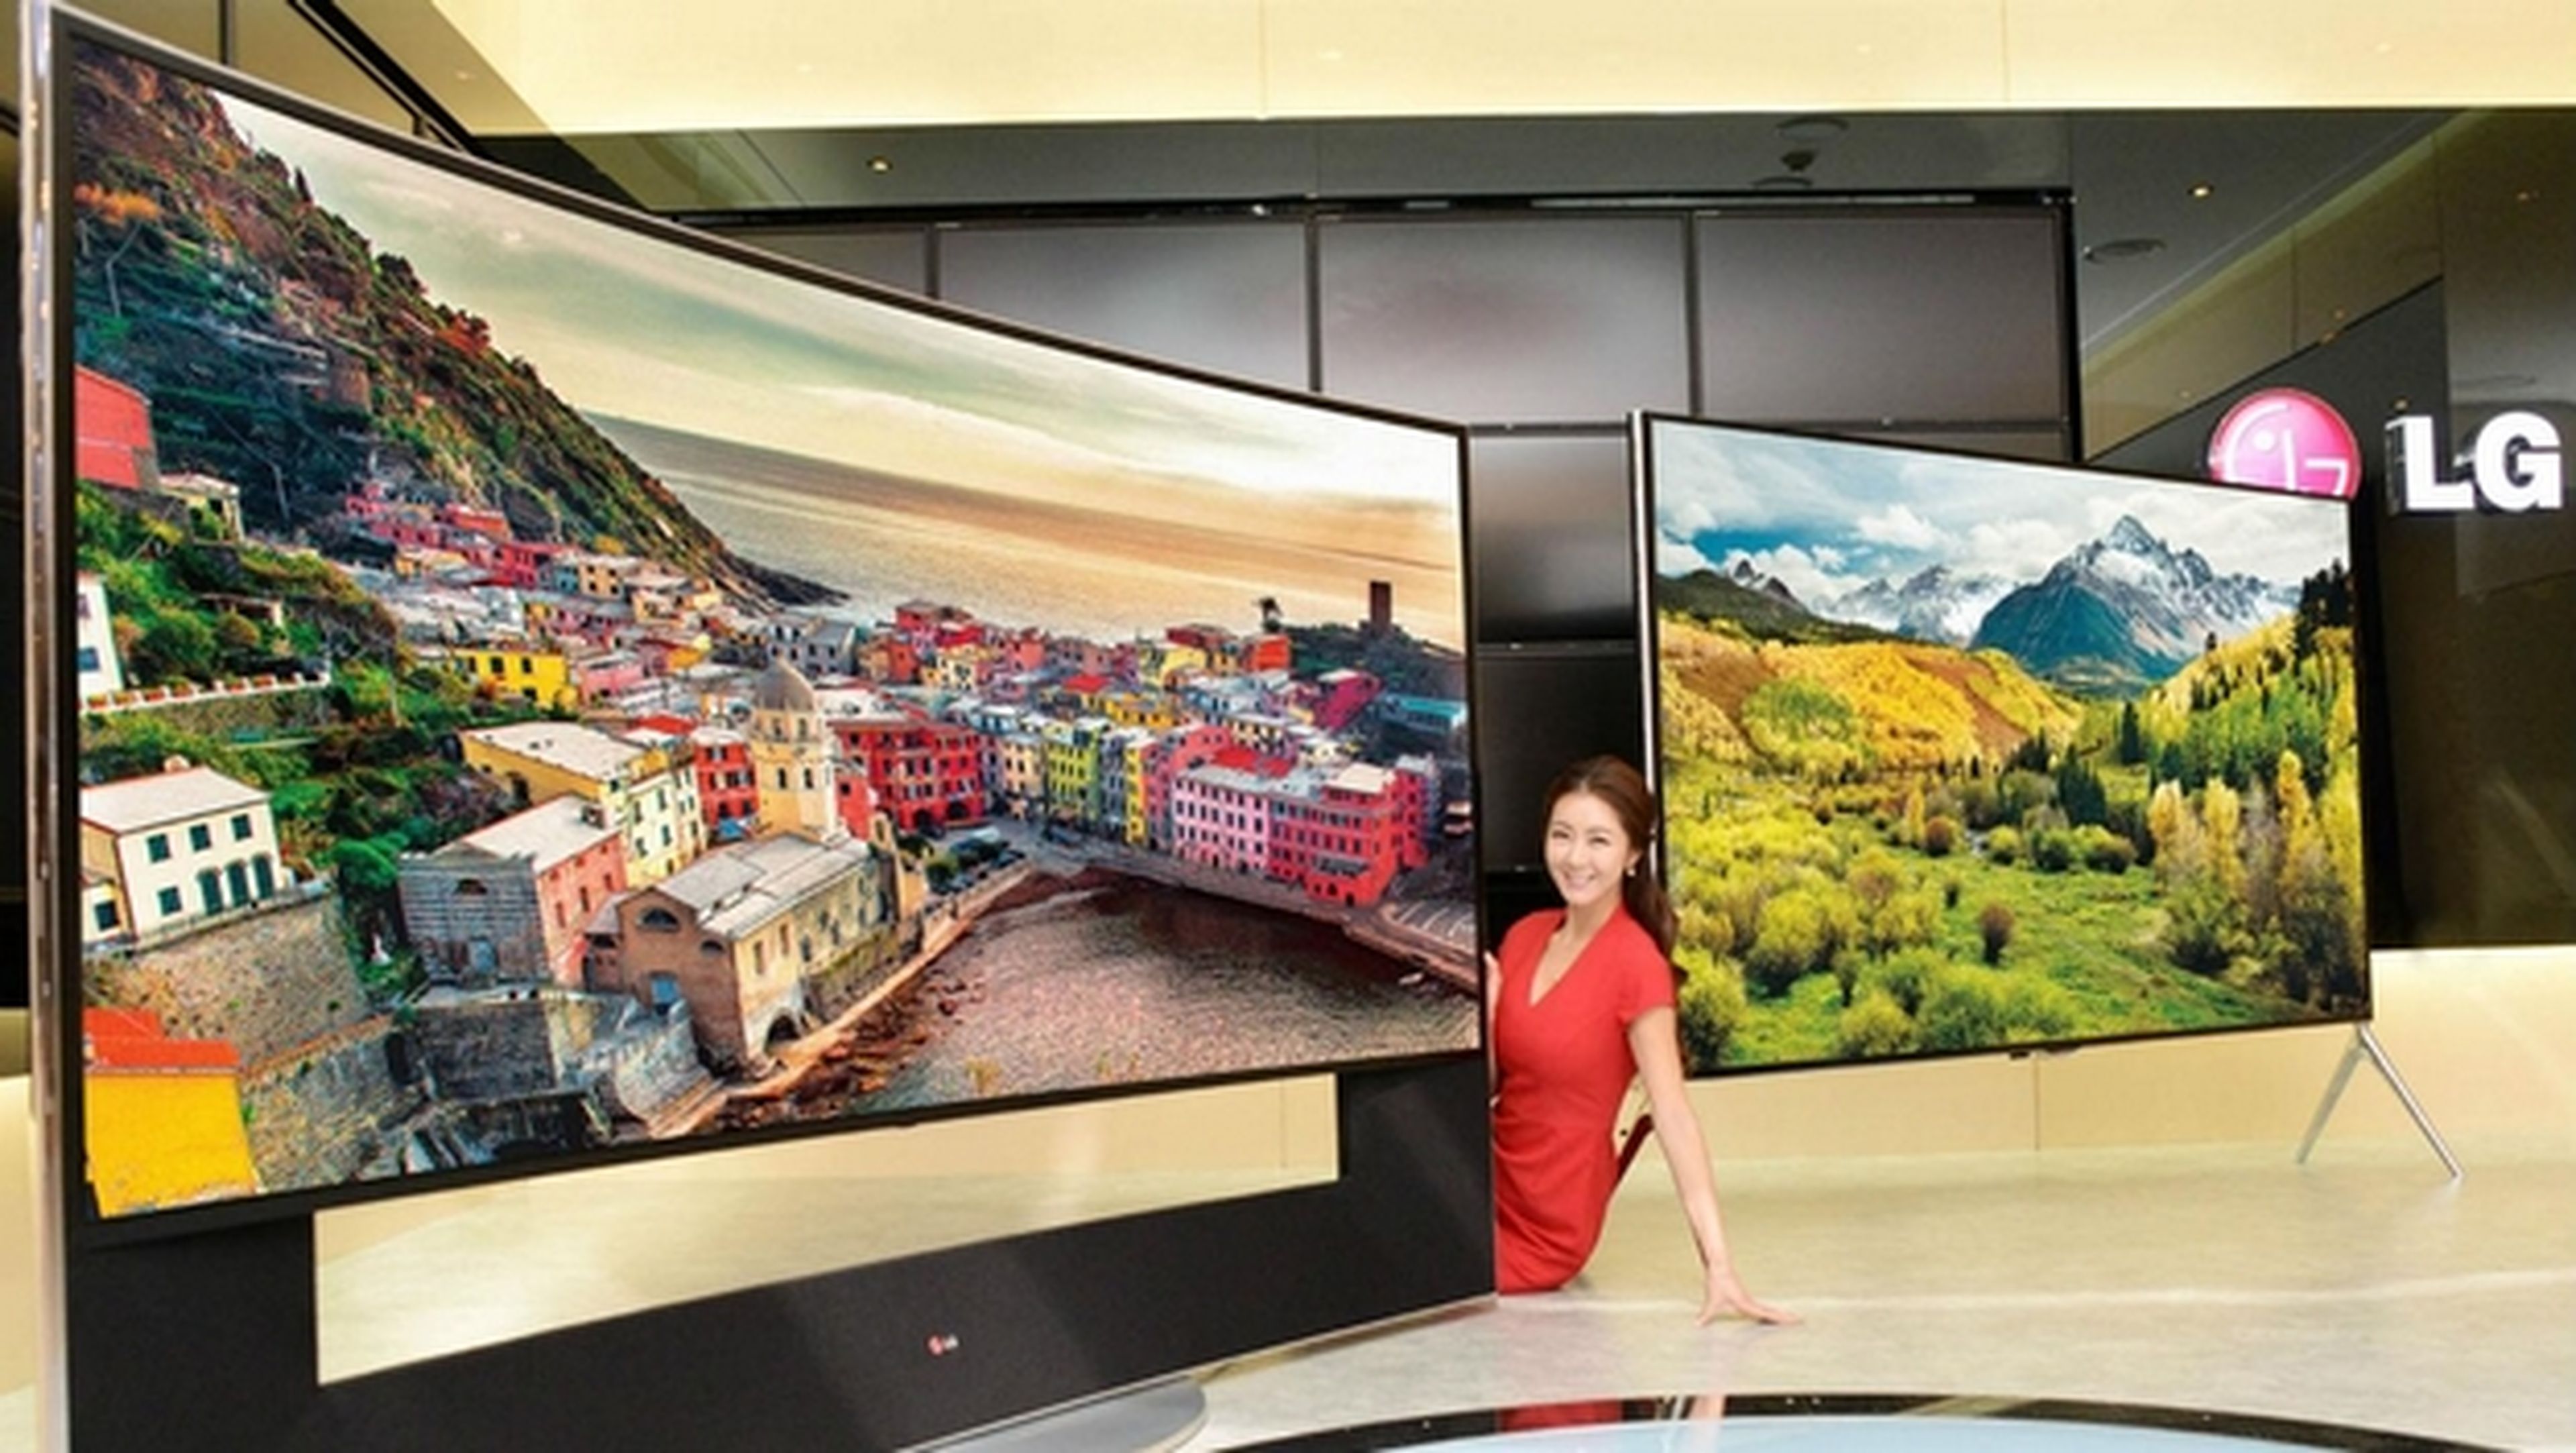 LG estrena siete nuevos televisores UltraHD o 4K en CES 2014, con pantalla curva o plana